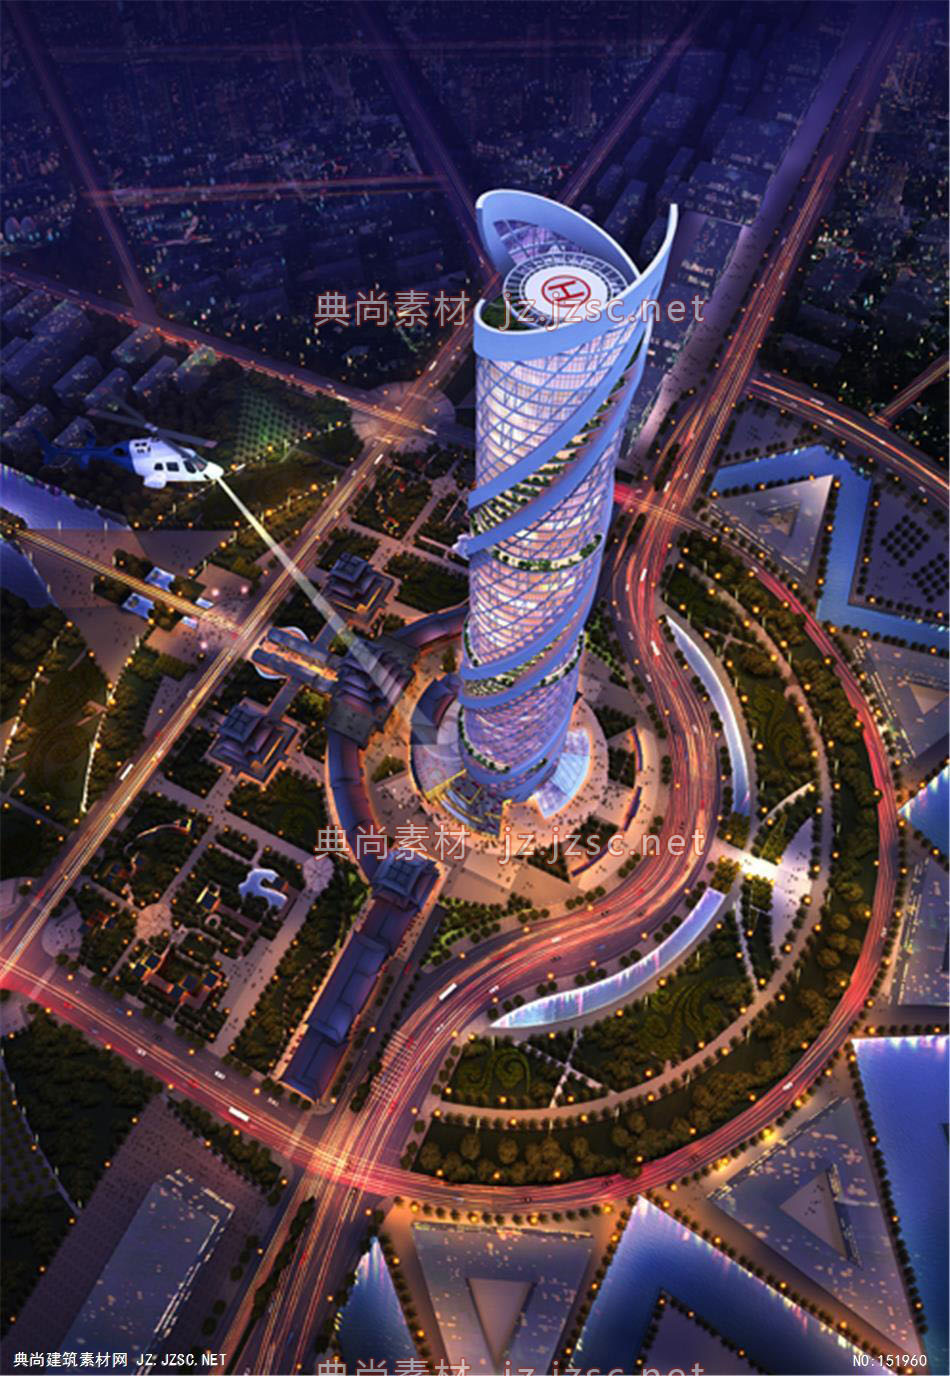 亚太钢结构产业园超高层03高层办公效果图+交通及医疗建筑效果图